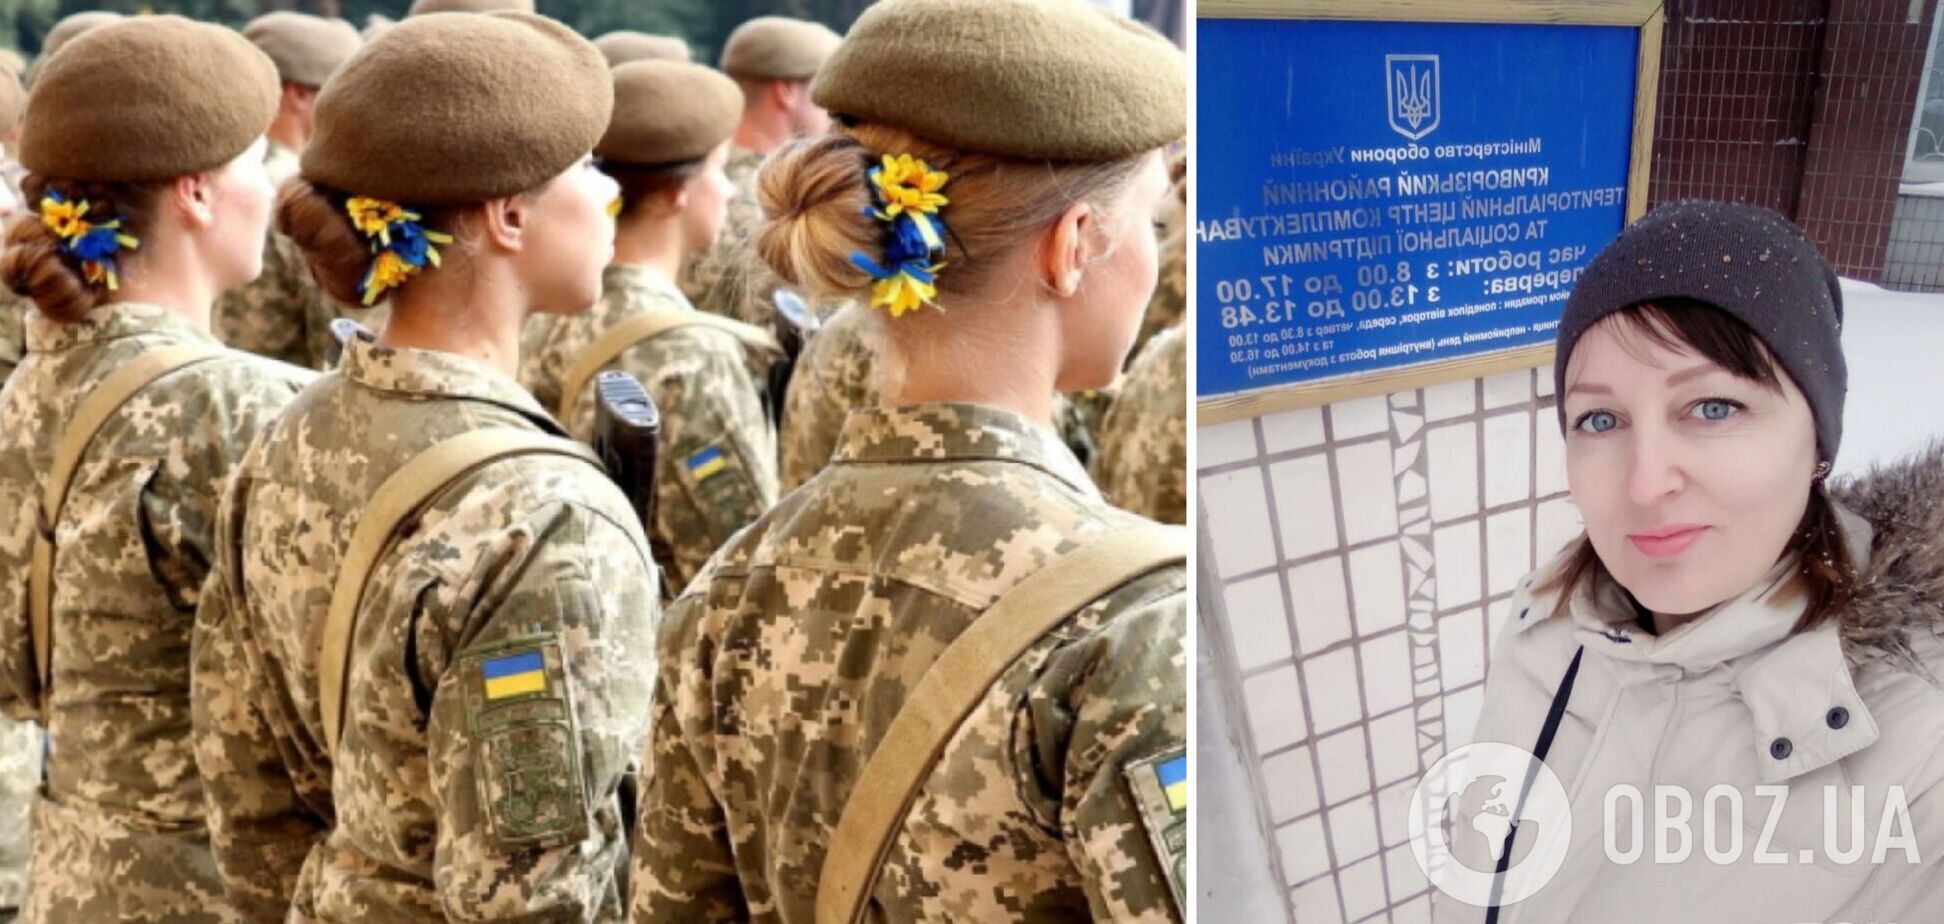 Паспорт, диплом и справка от гинеколога: украинка рассказала, как пыталась встать на воинский учет